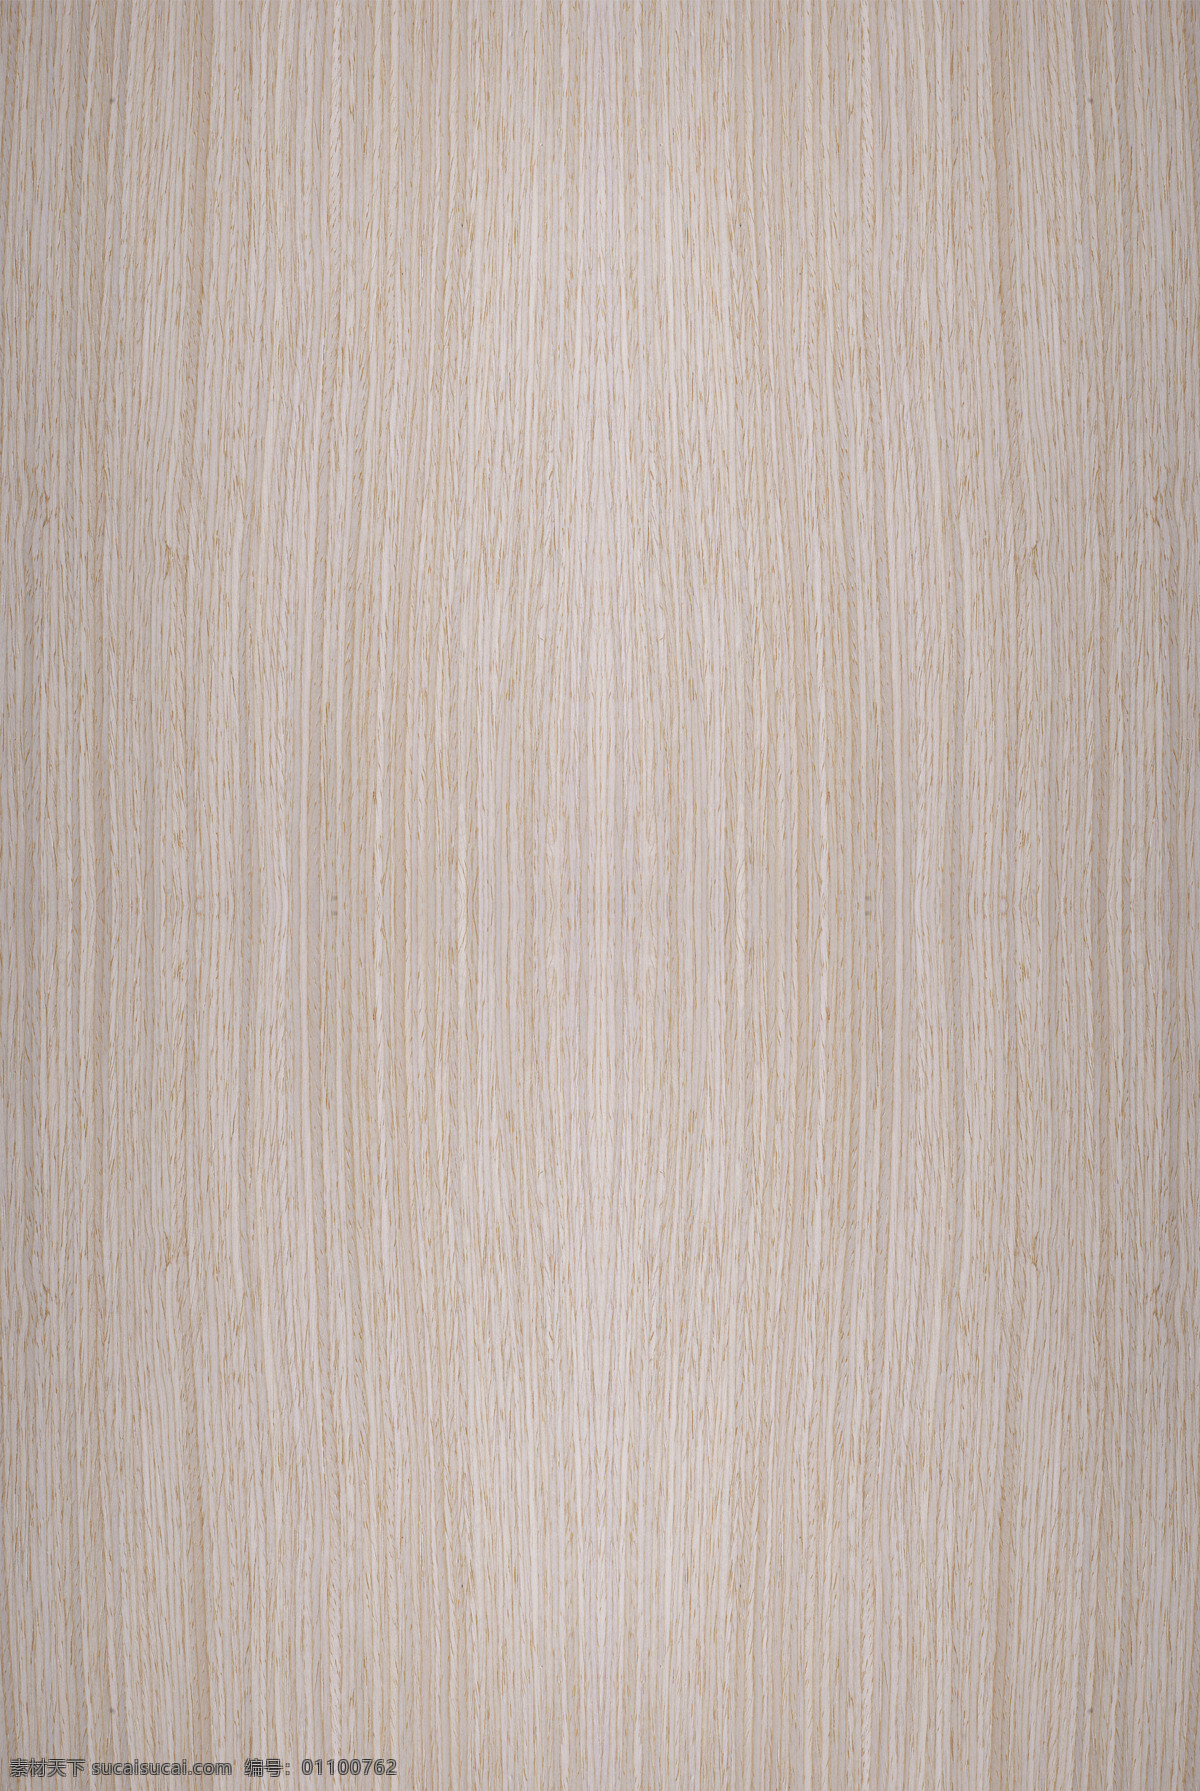 木纹贴图 经典橡木 木皮贴图 木纹 高清贴图 3d贴图 无缝拼图 uv板 木饰面板 3d设计 其他模型